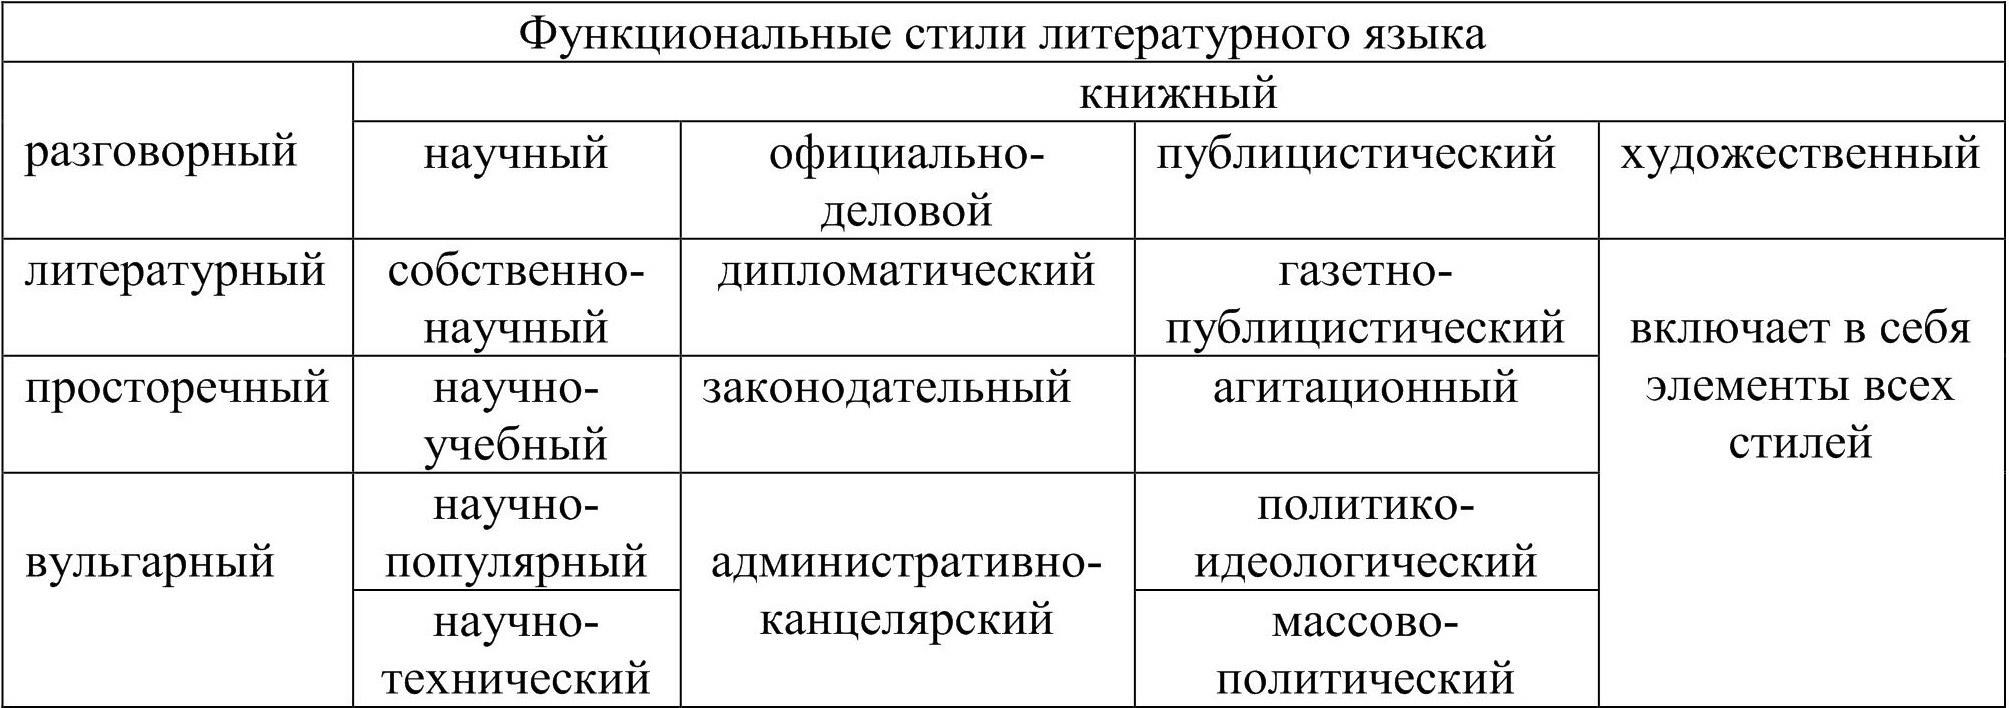 Функциональные стили современного русского литературного языка